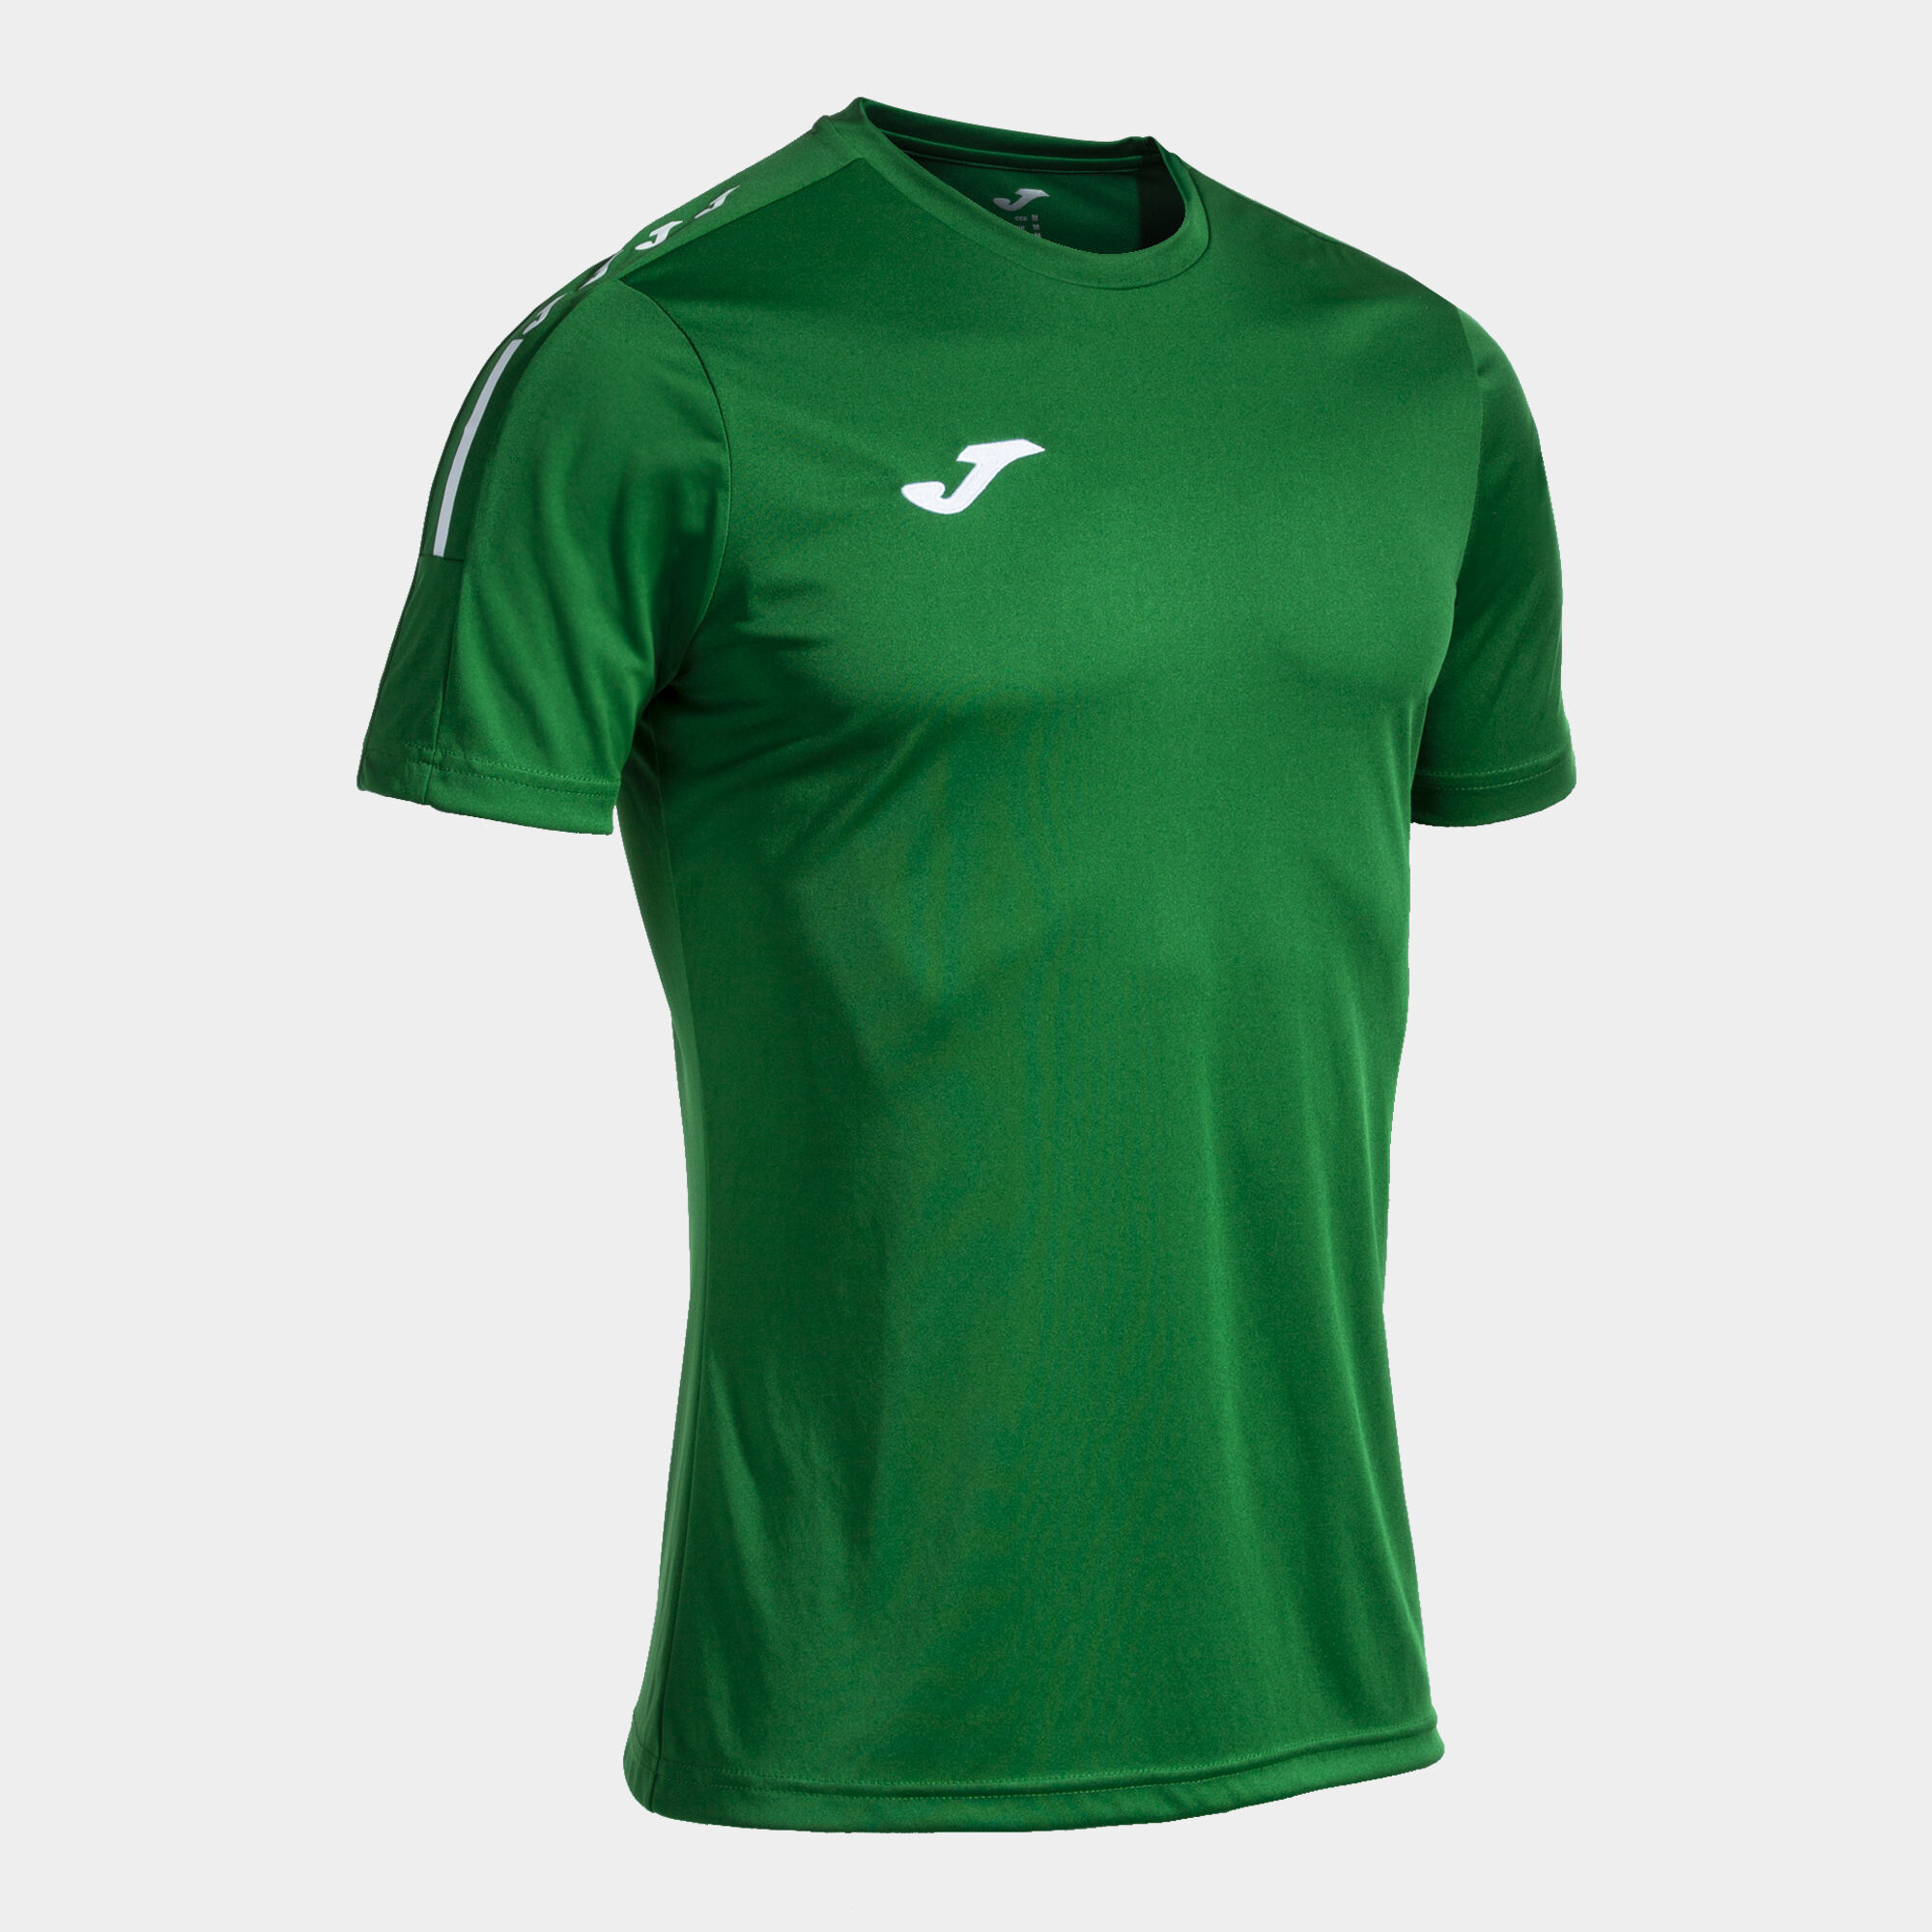 Shirt short sleeve man Olimpiada green